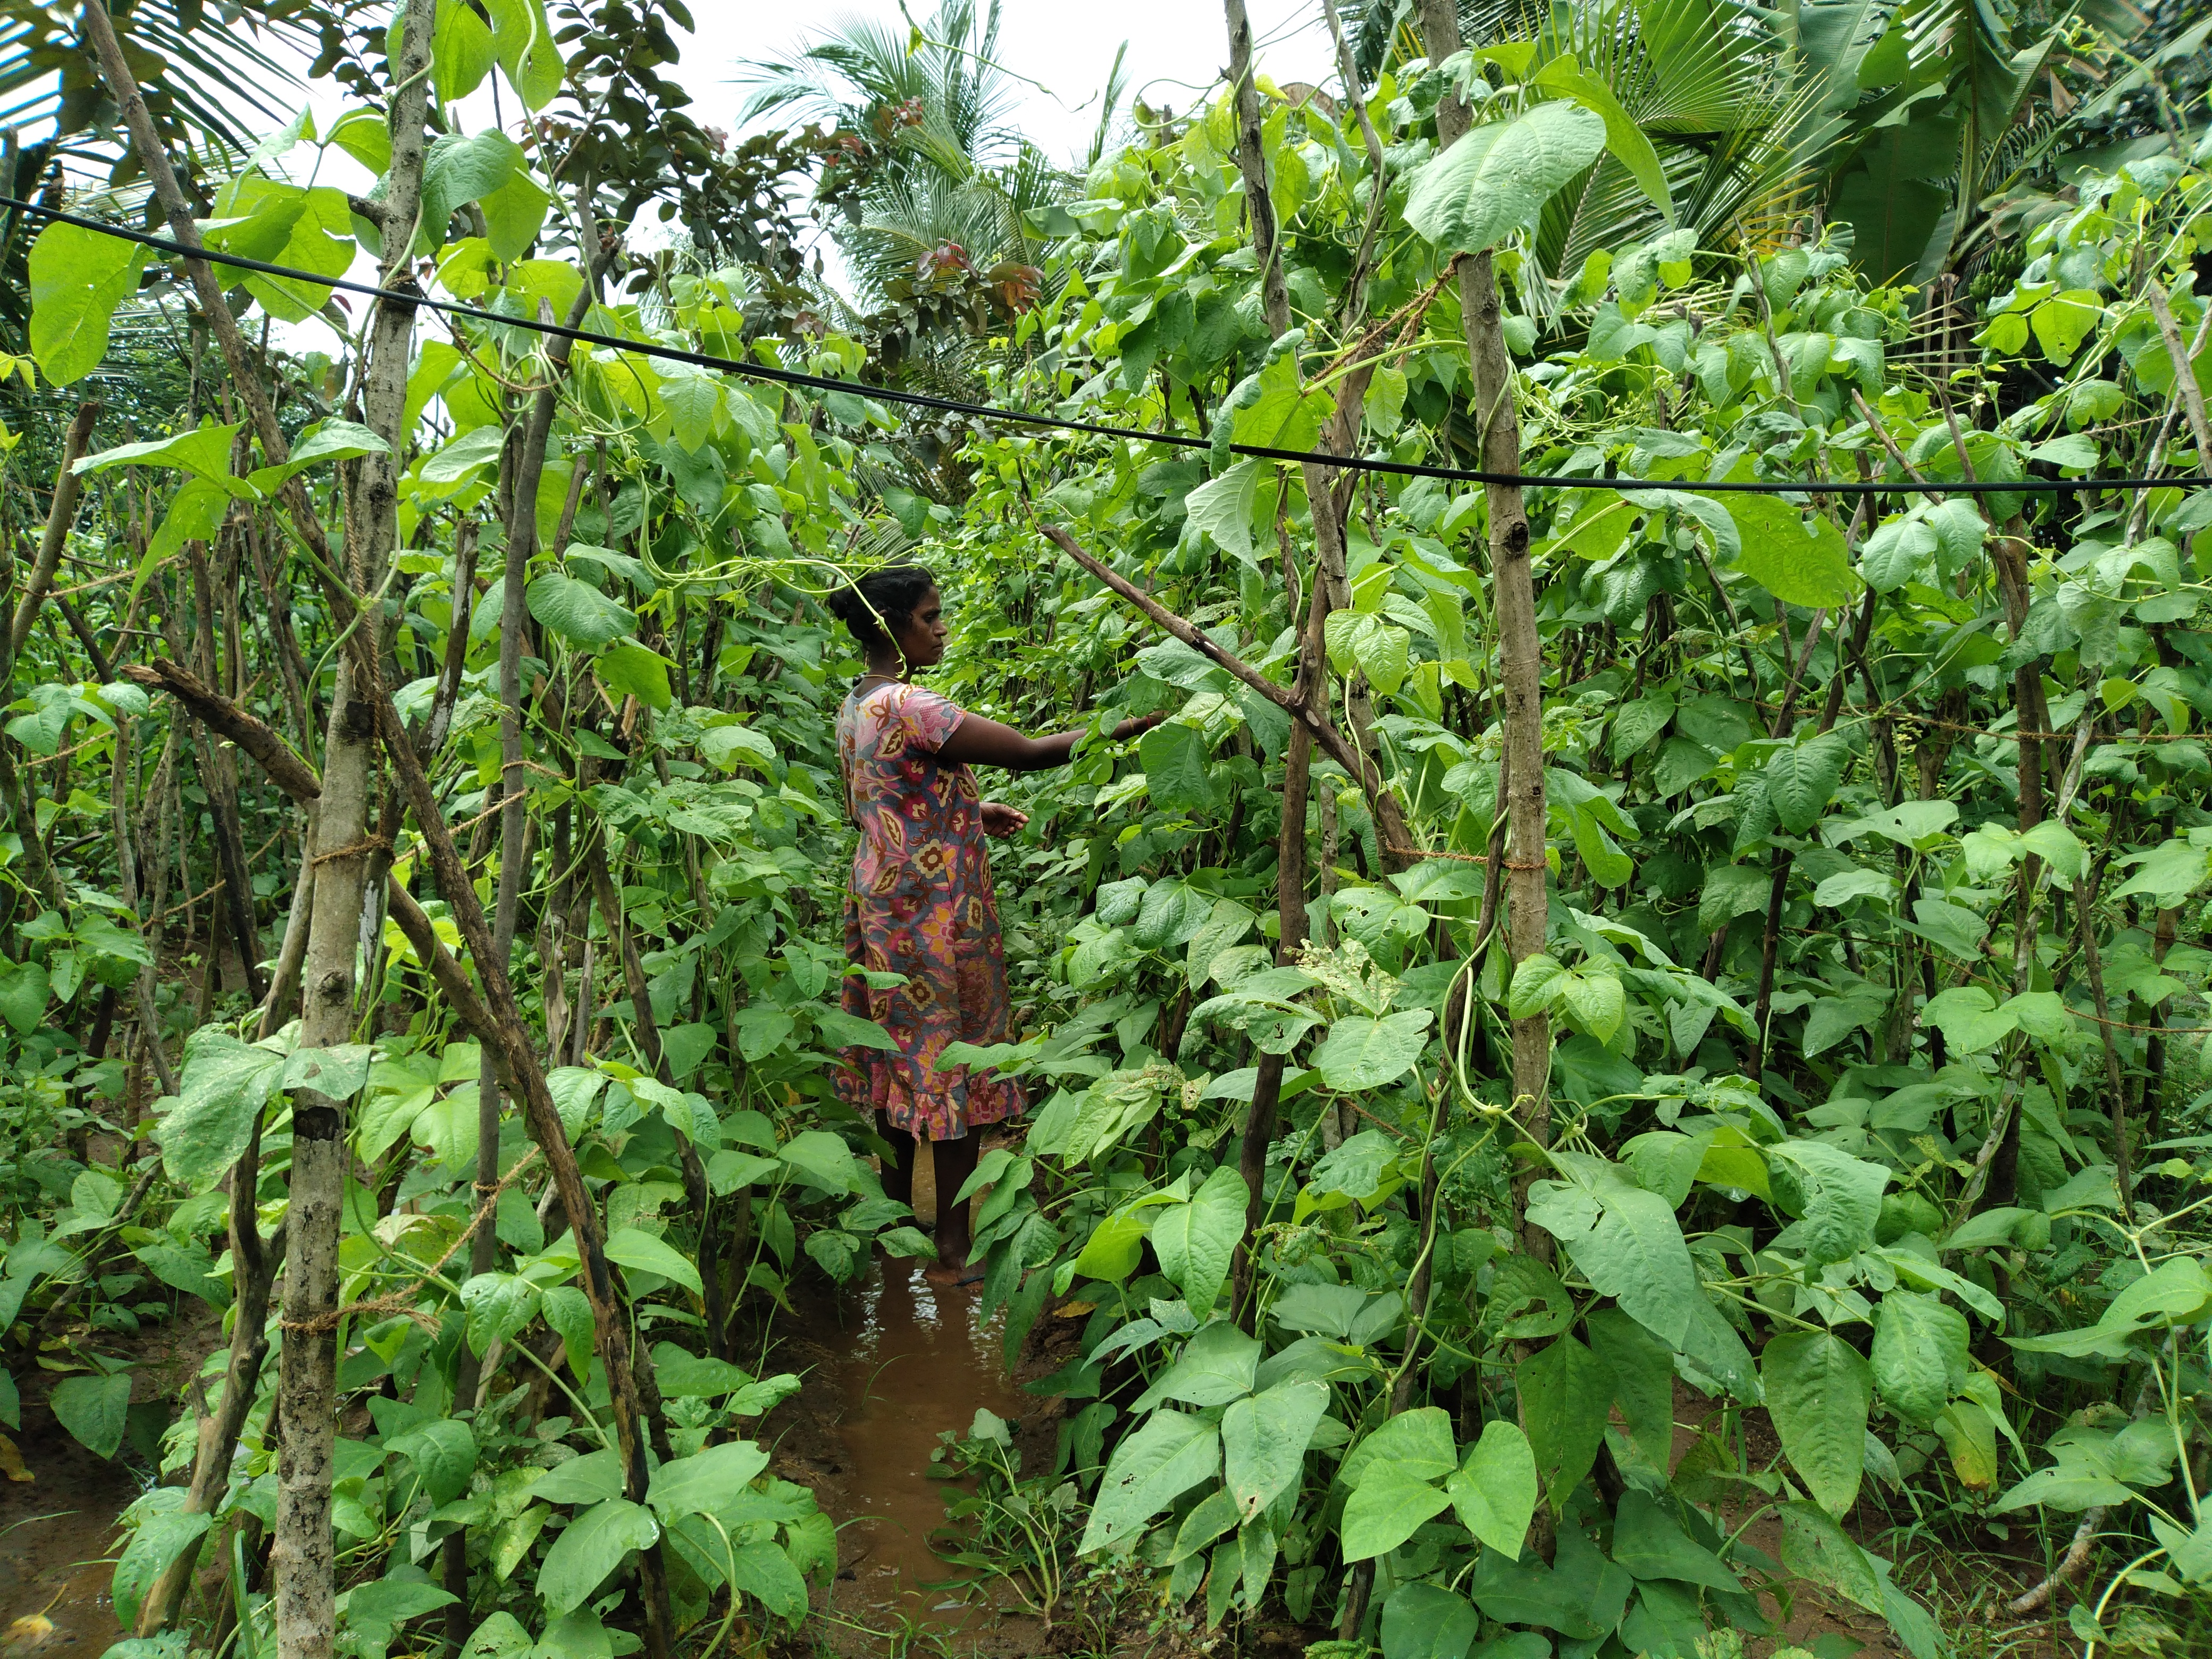 Luxmi in her plantation